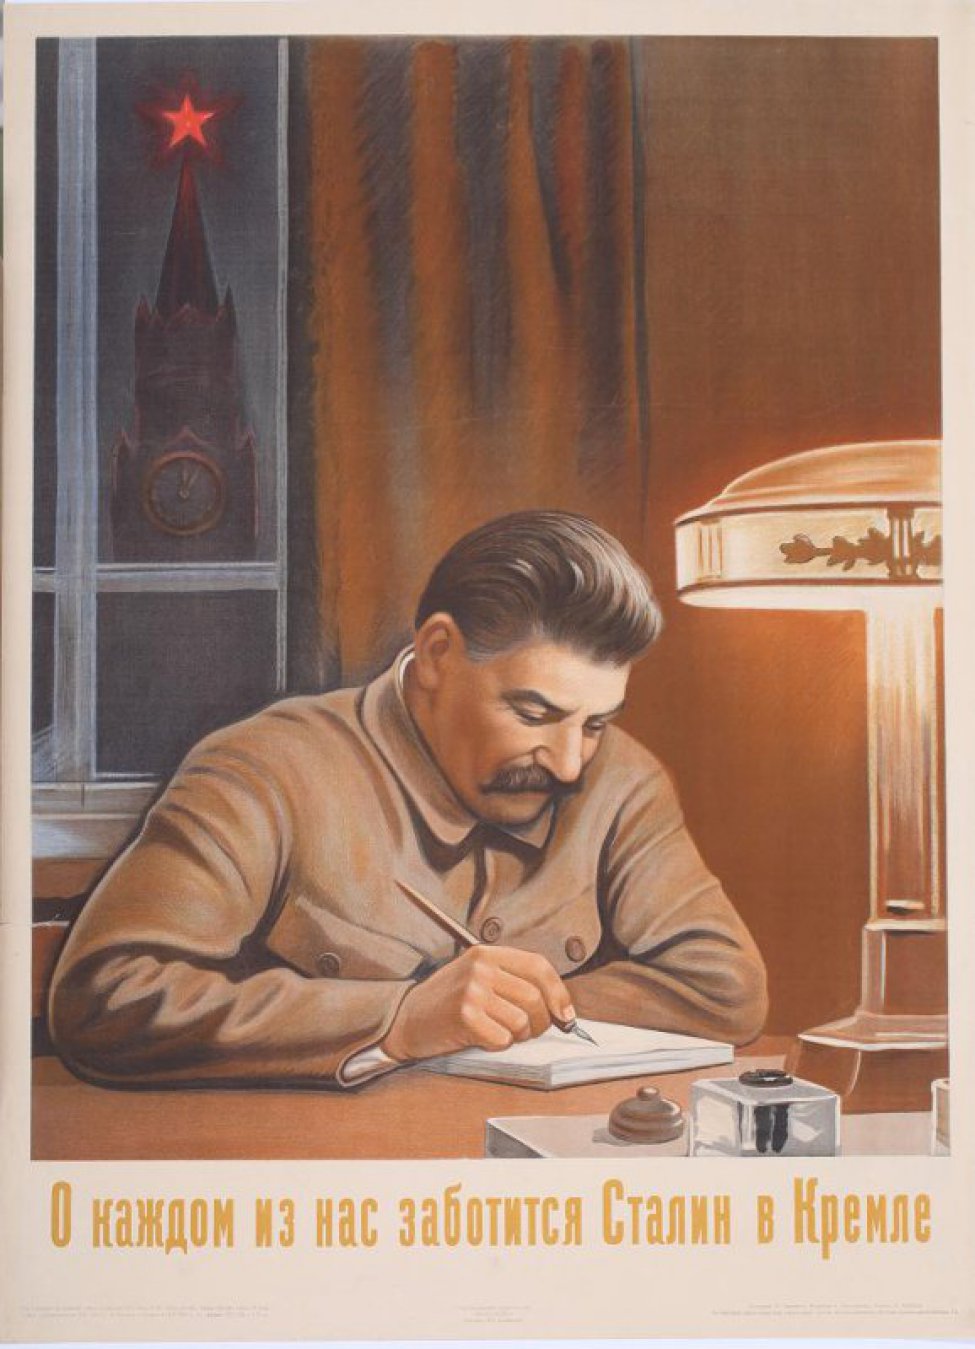 Изображен т.Сталин, сидящий за столом, на котором стоит настольная лампа и чернильница. В правой руке ручка.